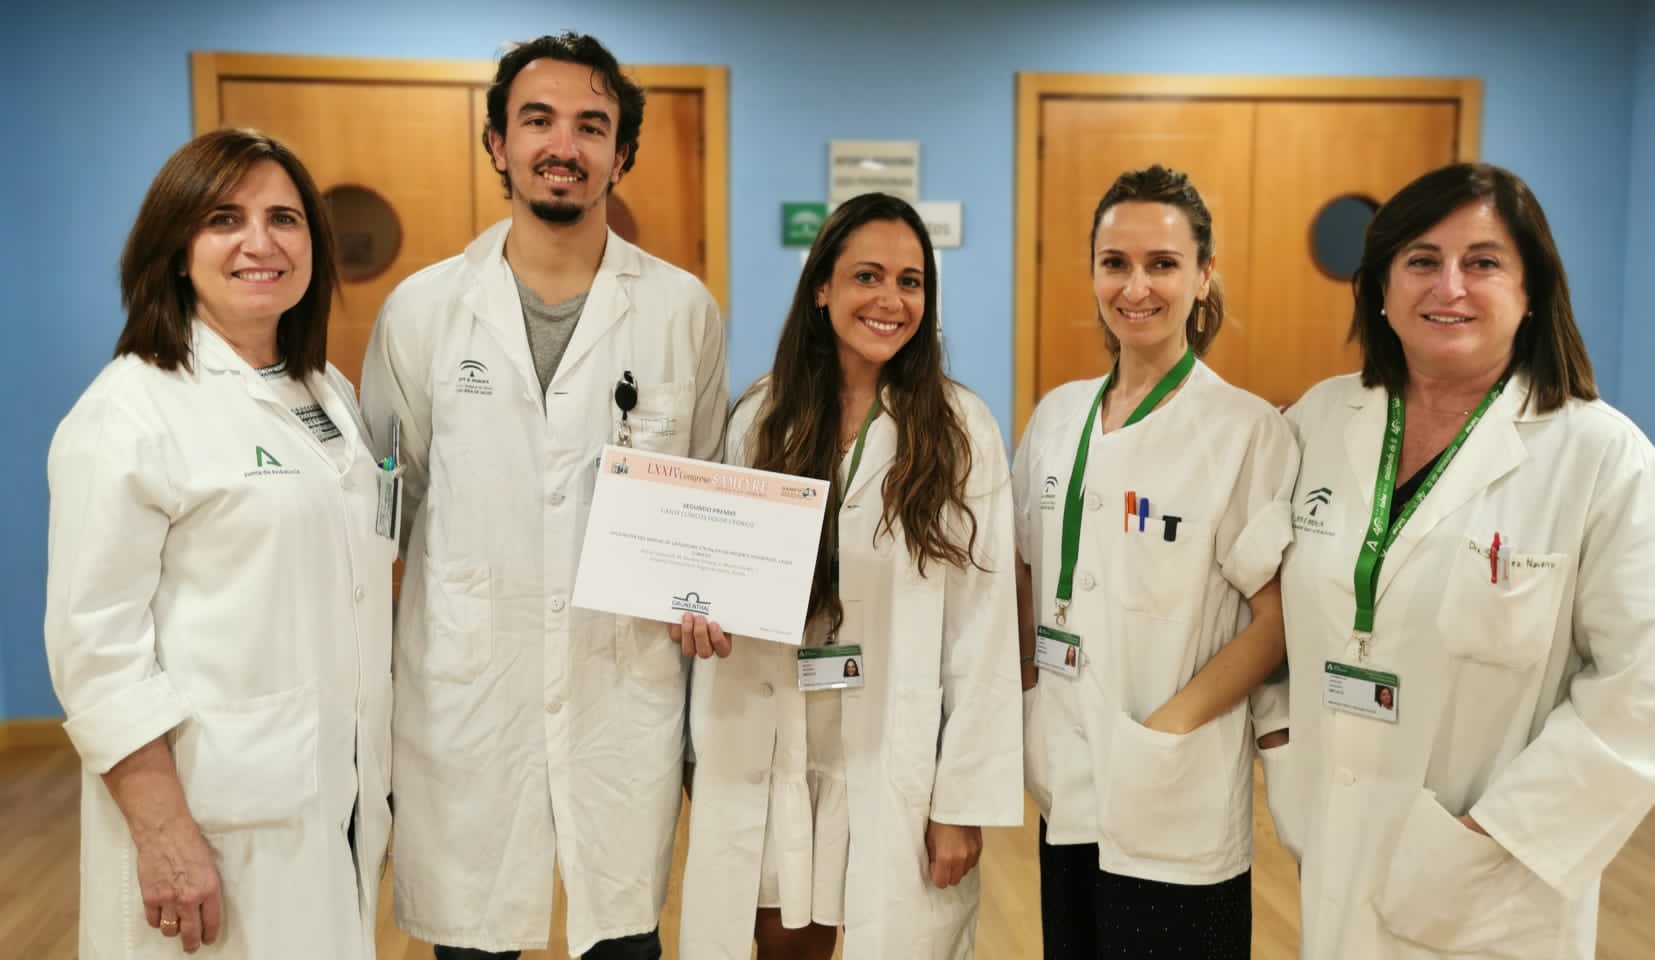 Reconocimiento al Hospital de Valme en el congreso andaluz de Medicina Física y Rehabilitación con su selección entre los mejores casos clínicos